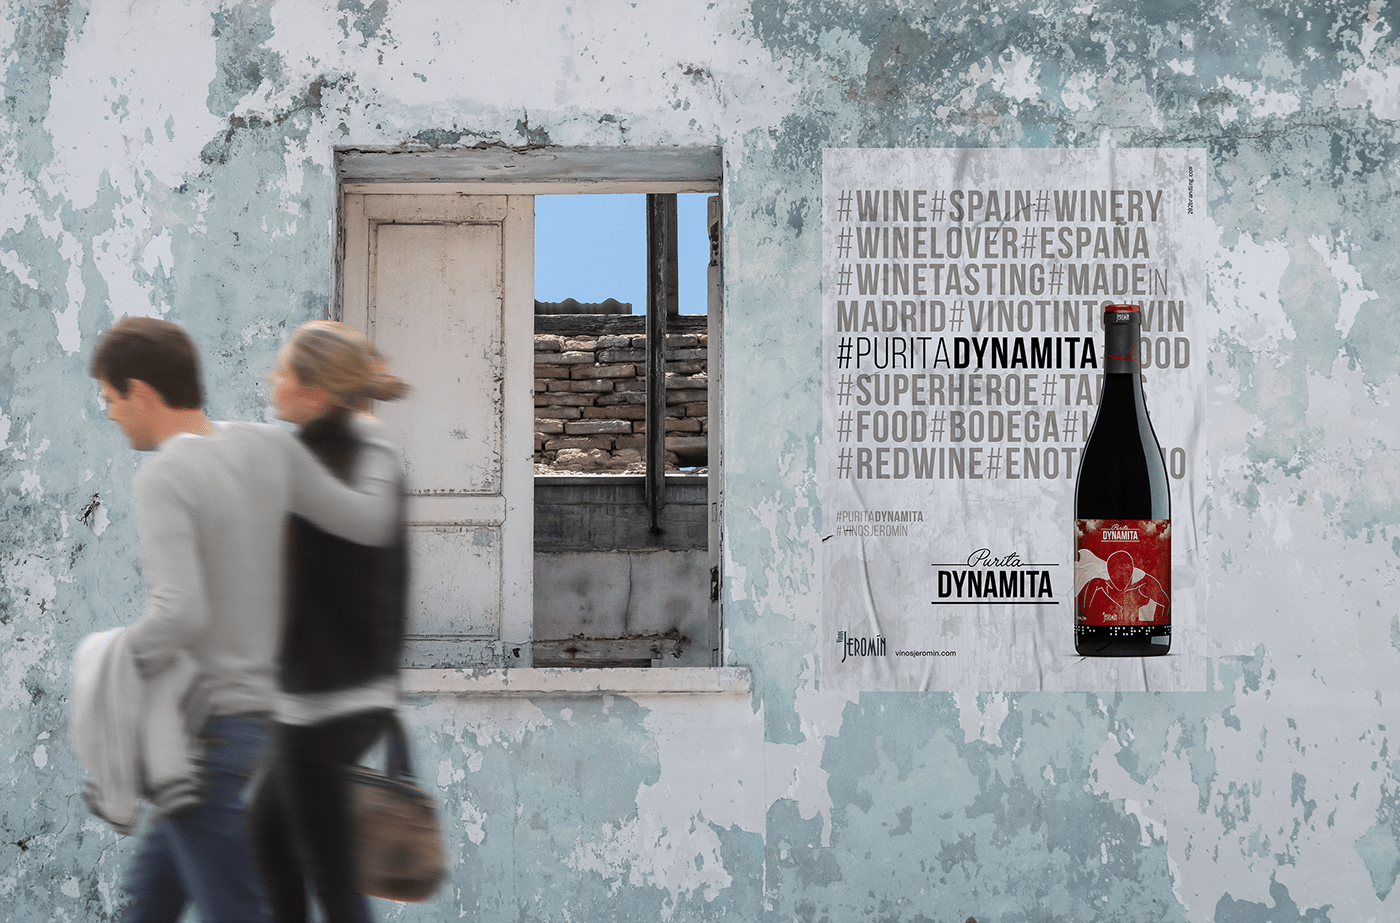 Campaña de publicidad Purita Dynamita en marquesina y poster para Vinos Jeromín, Madrid, España